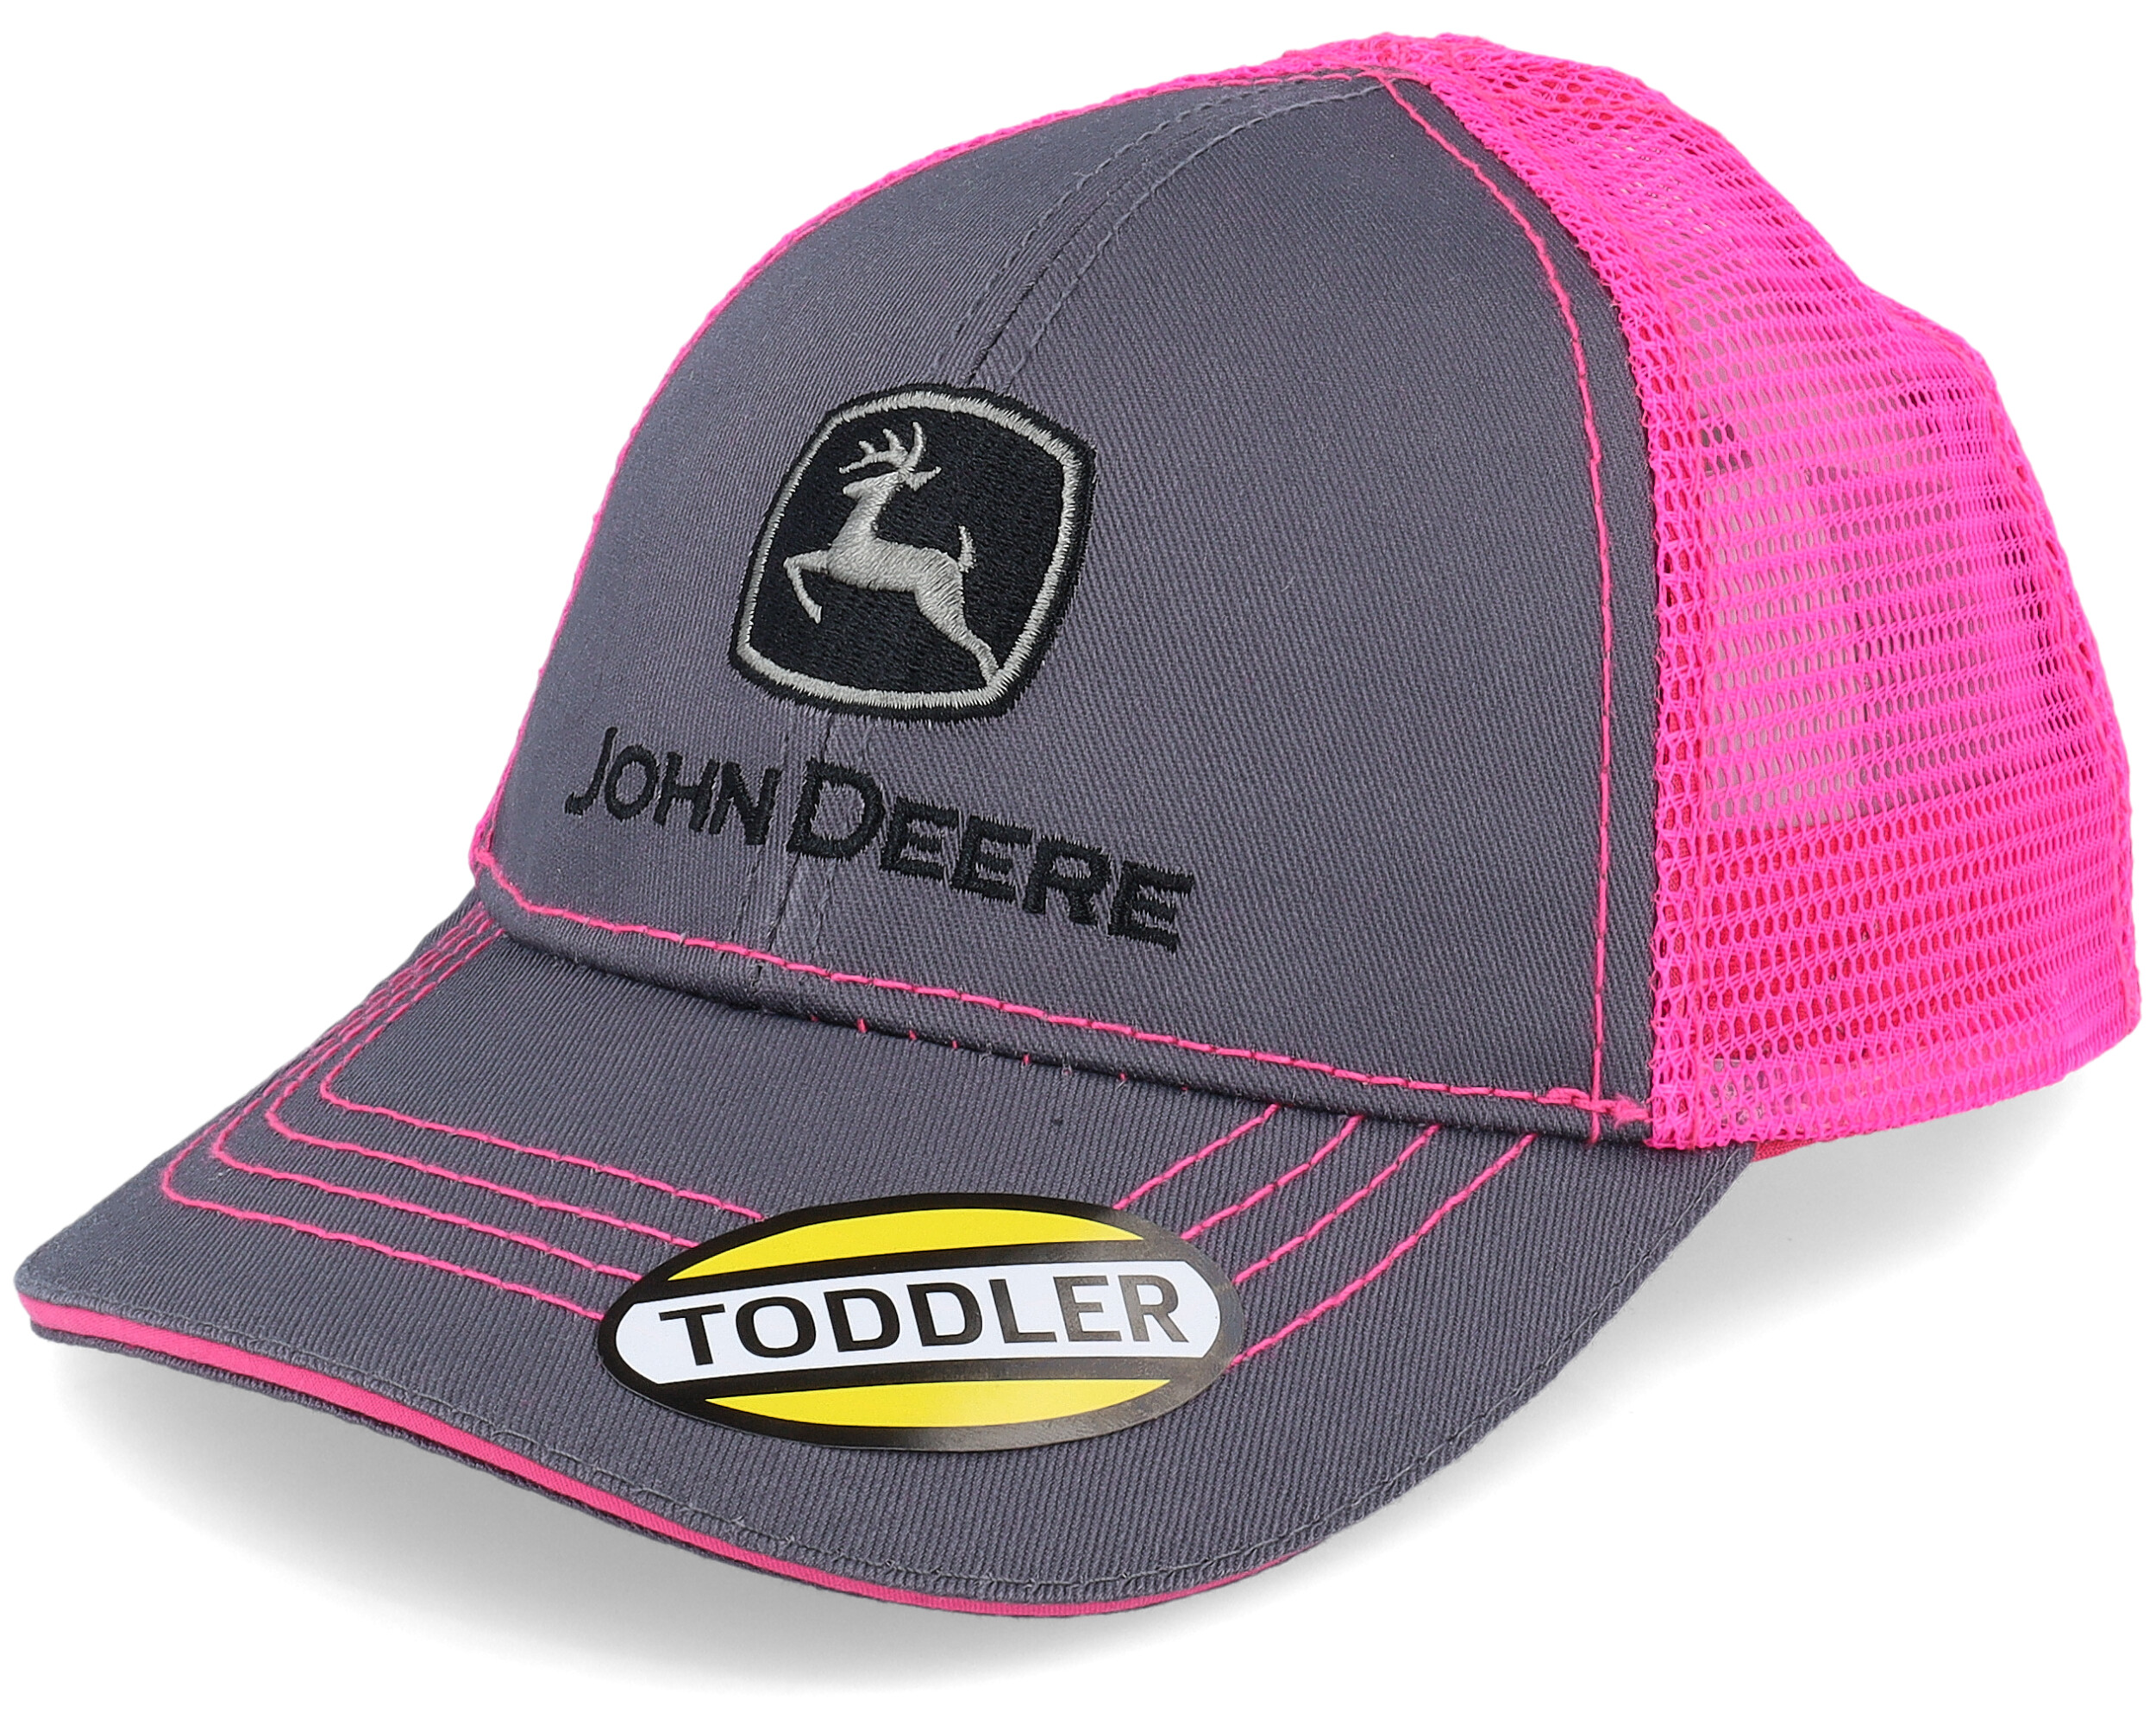 Kids Toddler Neon Charcoal/Pink Trucker - John Deere cap